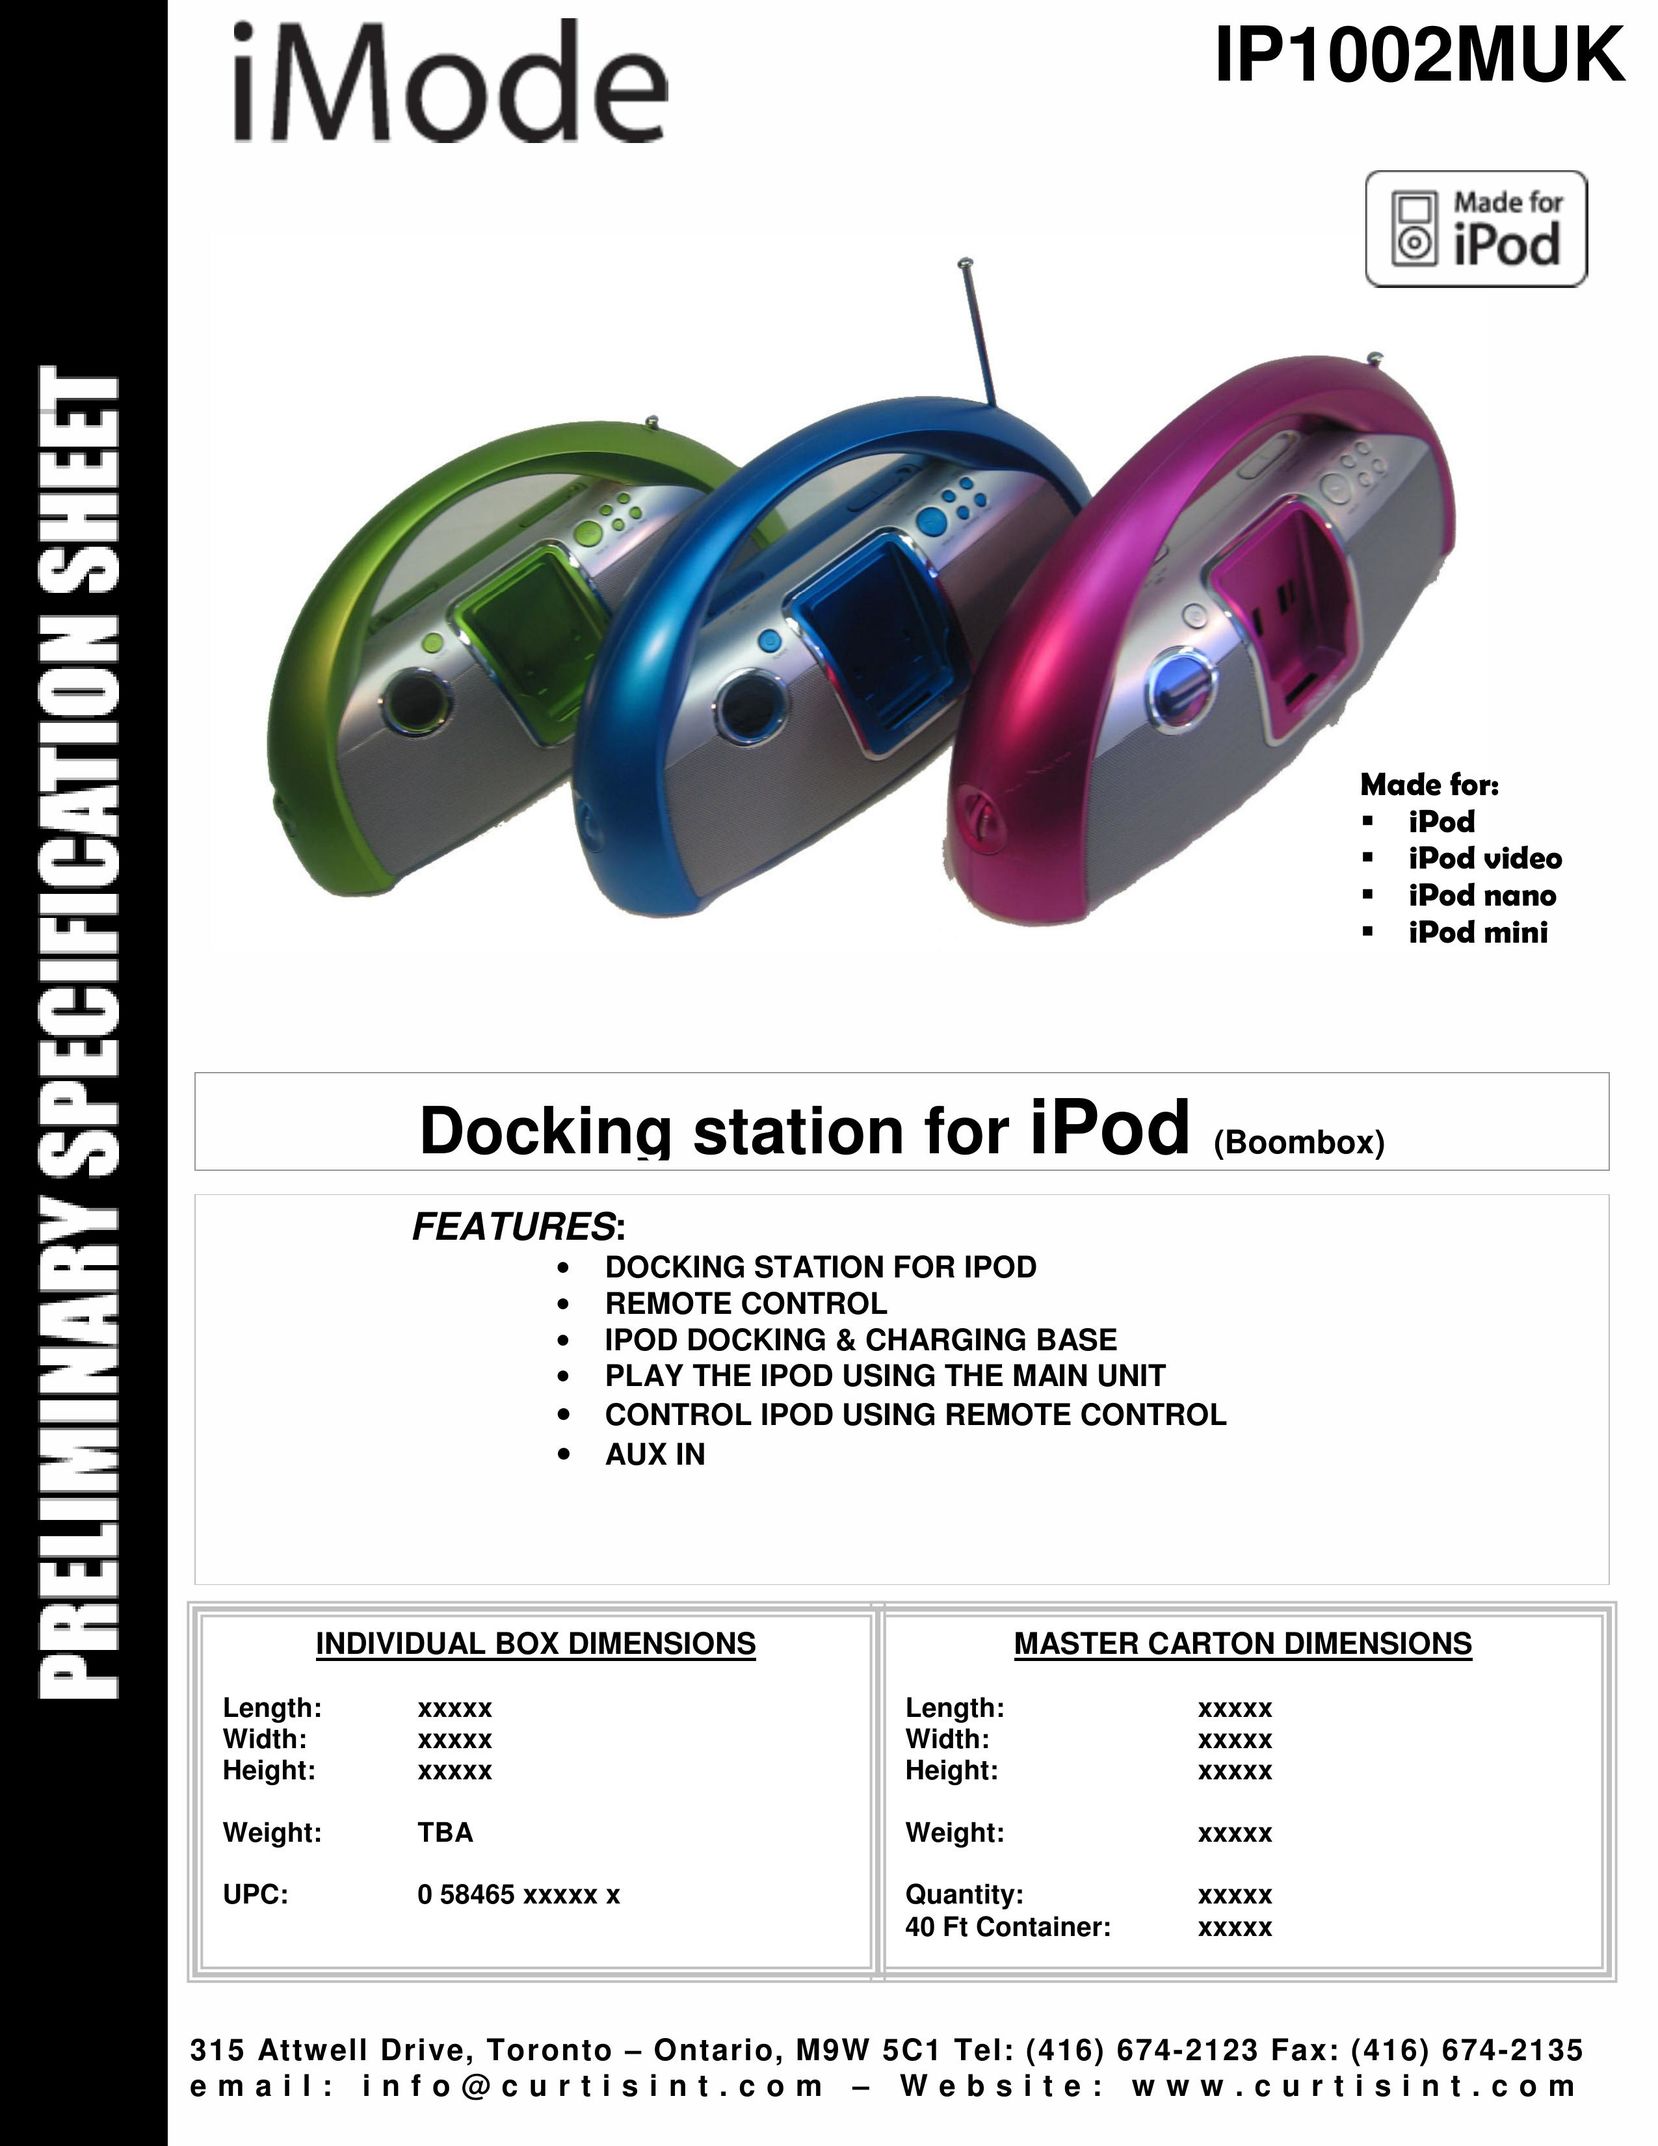 Curtis IP1002MUK MP3 Docking Station User Manual